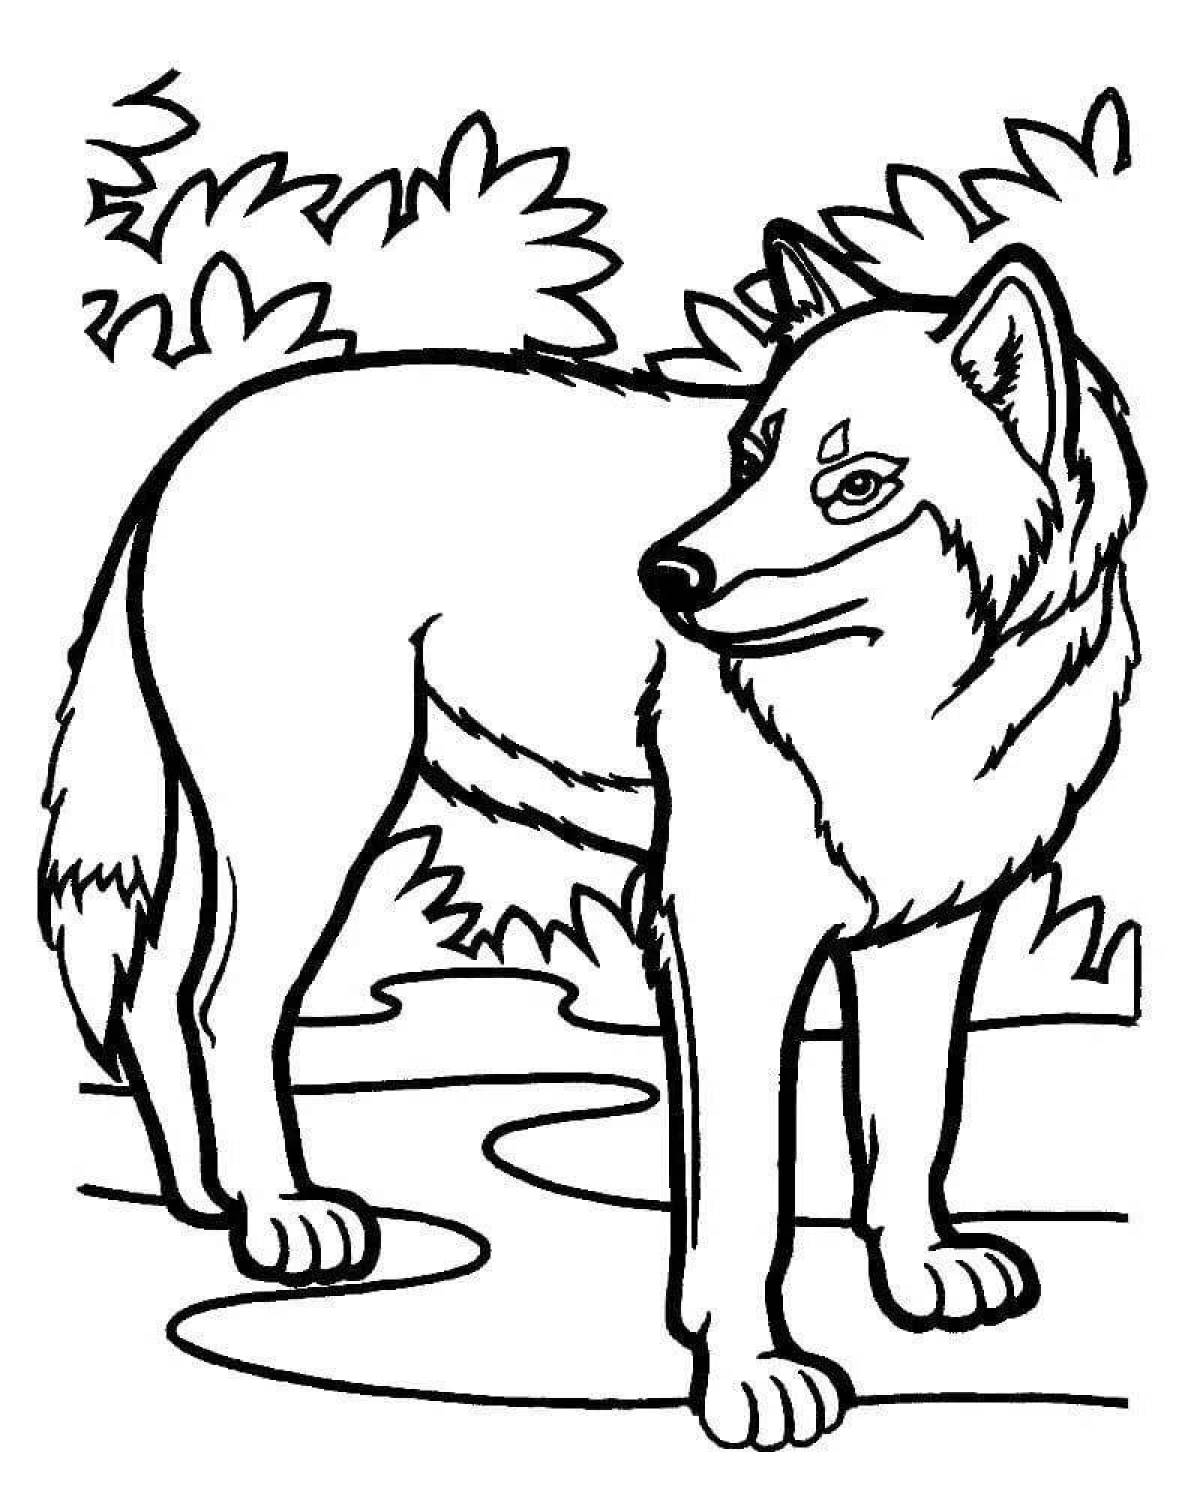 Яркая раскраска рисунок волка для детей